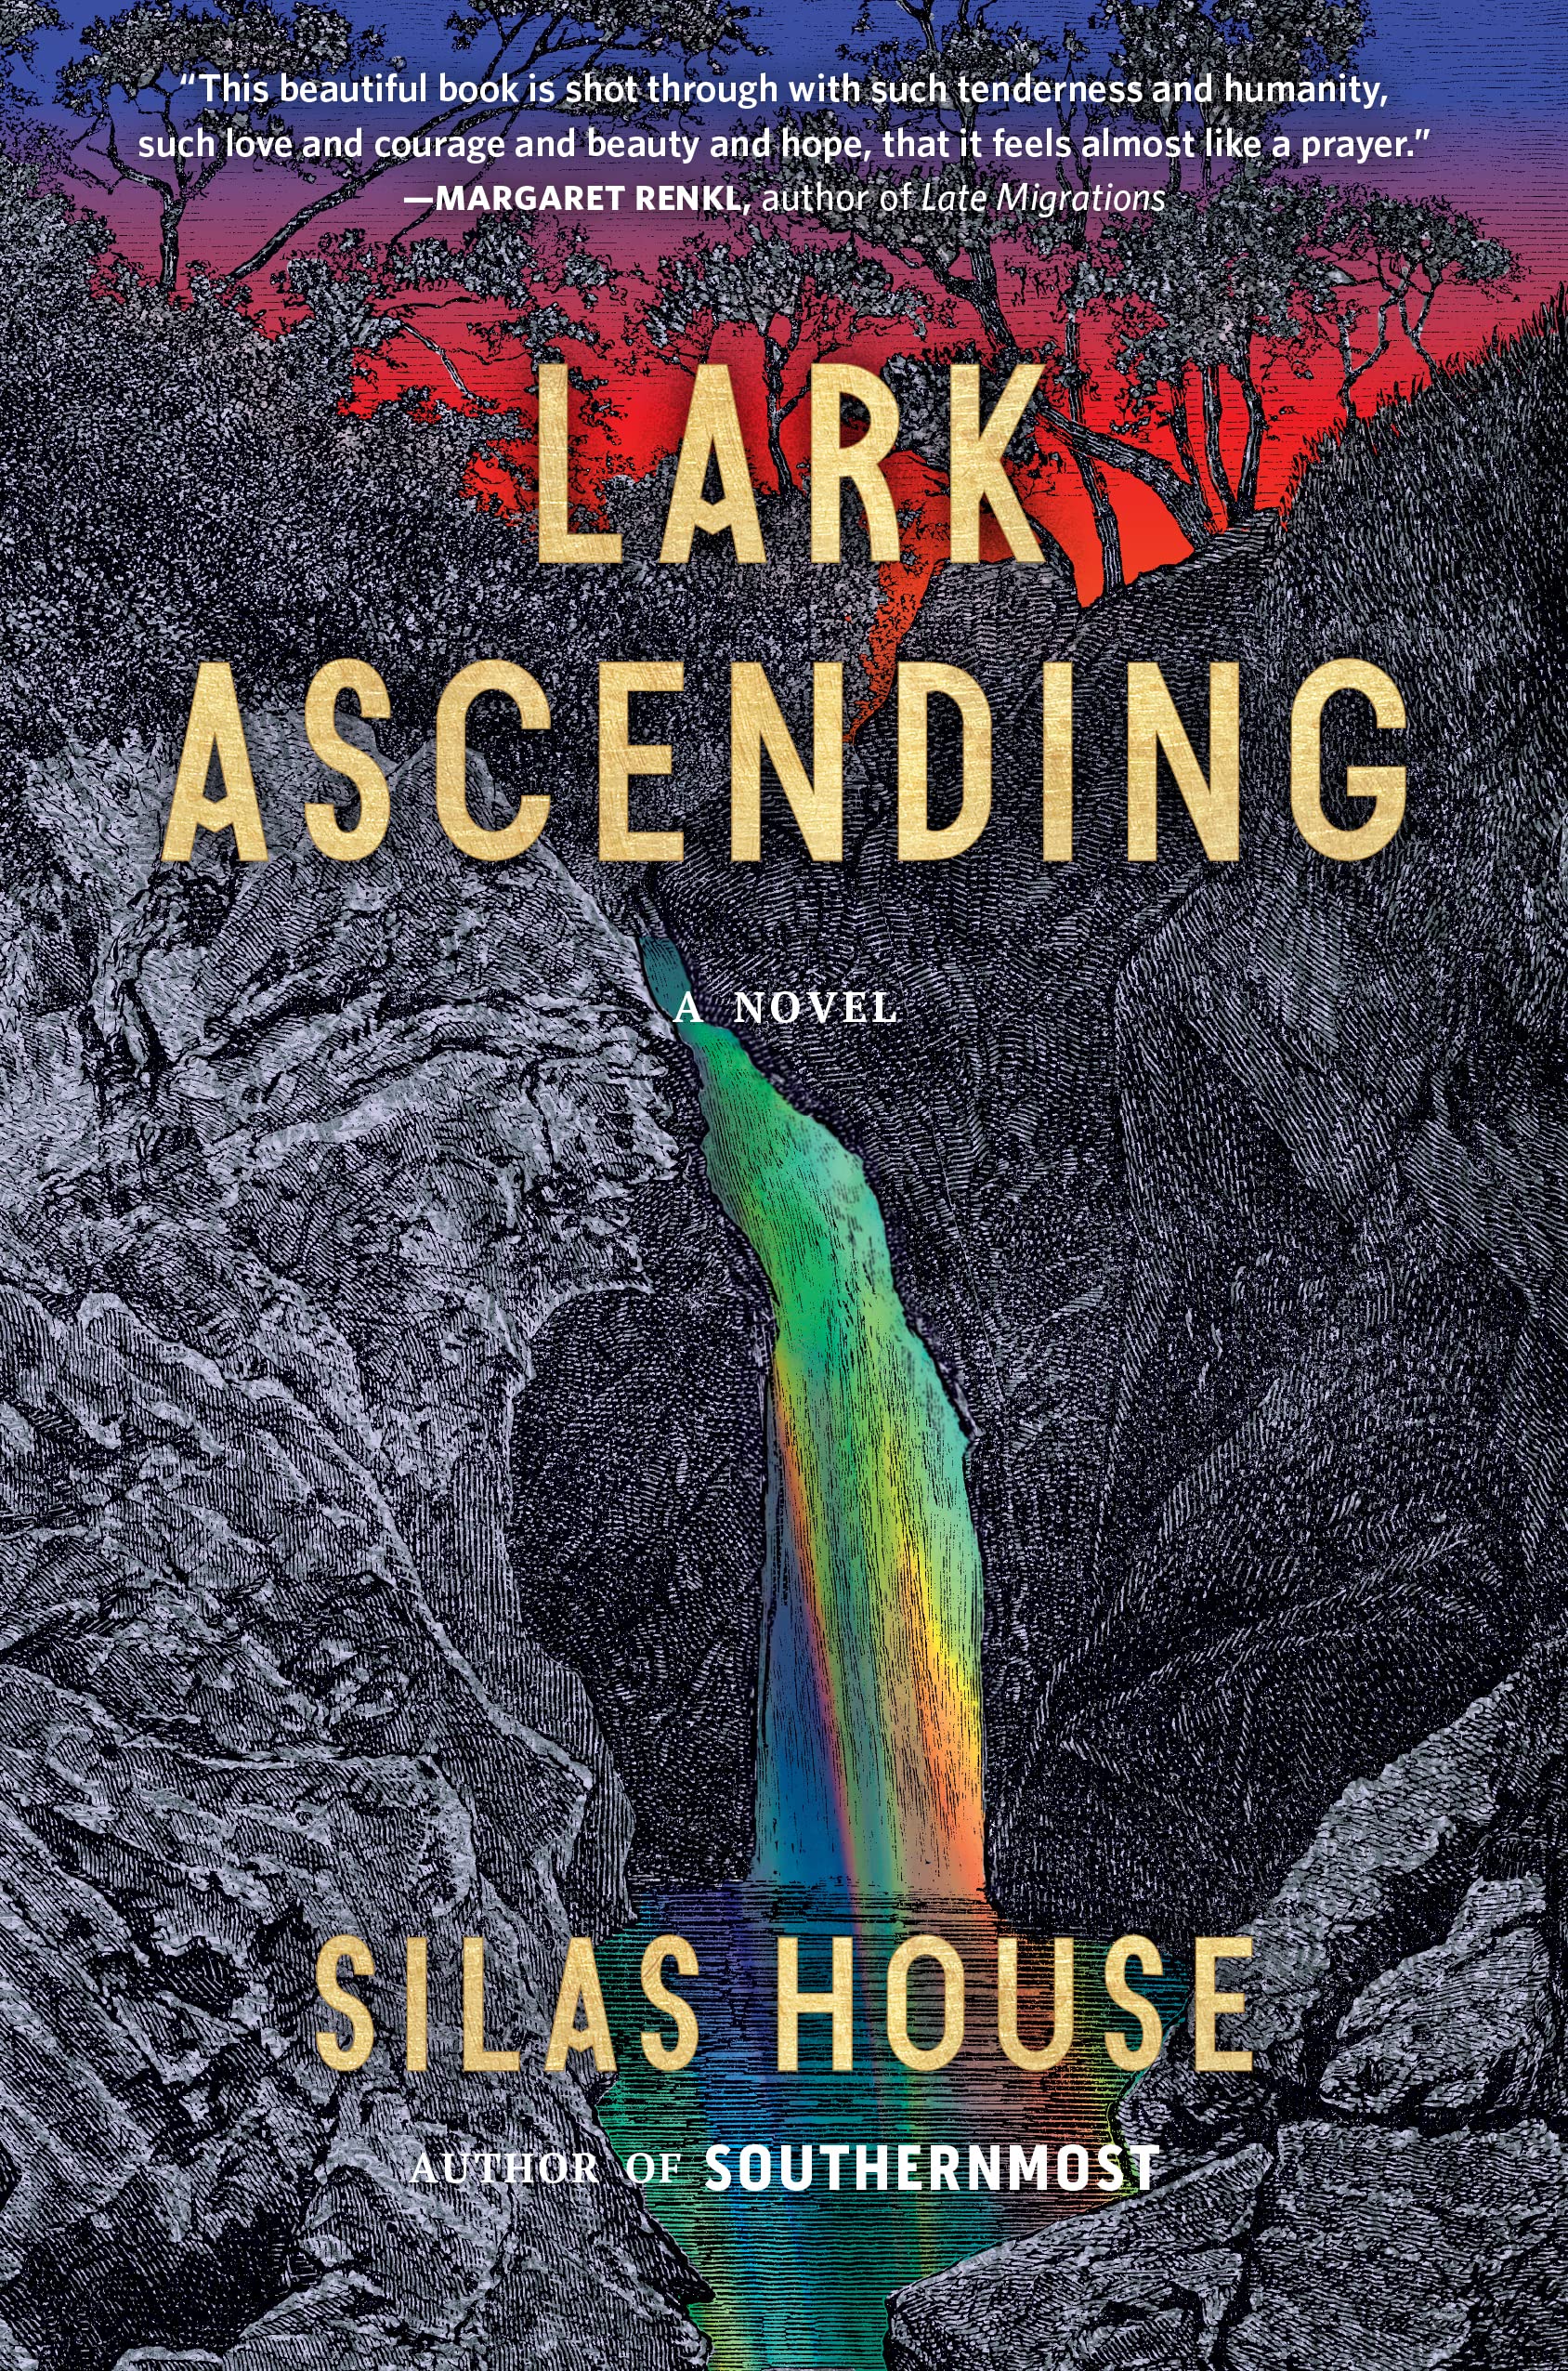 Image for "Lark Ascending"